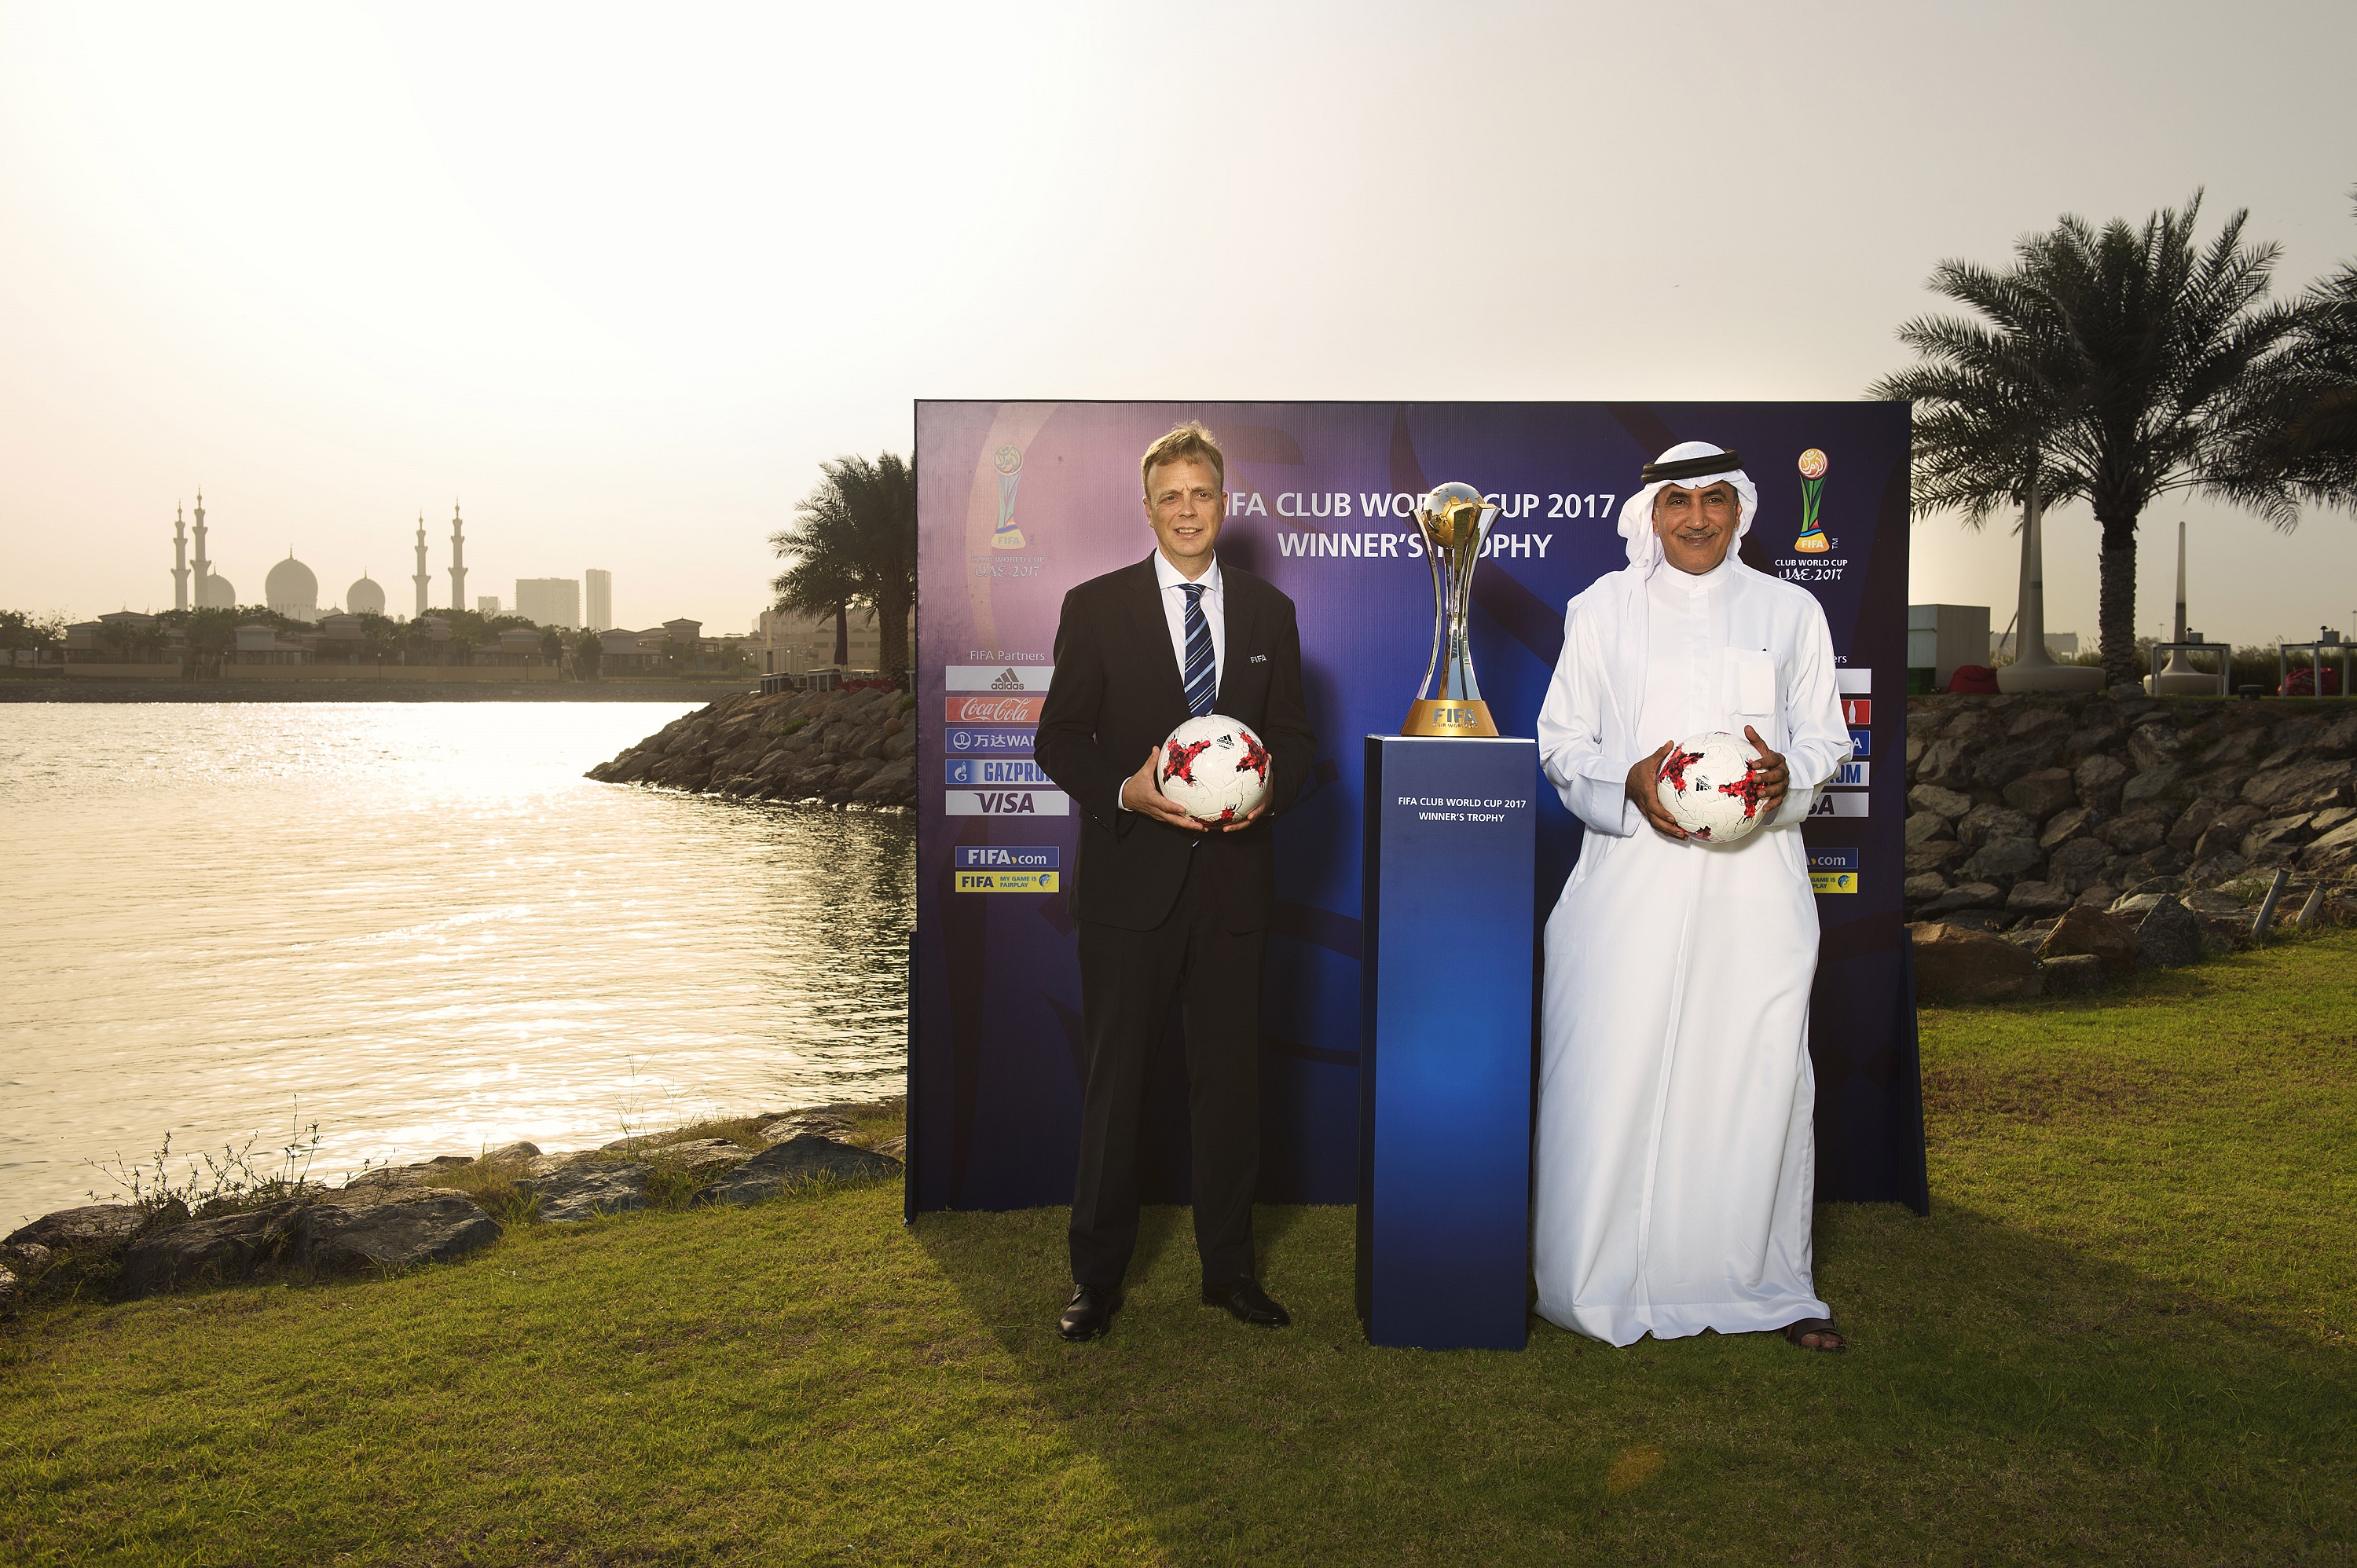 بطولة كأس العالم للأندية الإمارات FIFA 2017 تكشف النقاب عن مجموعة من باقات السفر الجاذبة لعشاق كرة القدم في معرض سوق السفر العربي